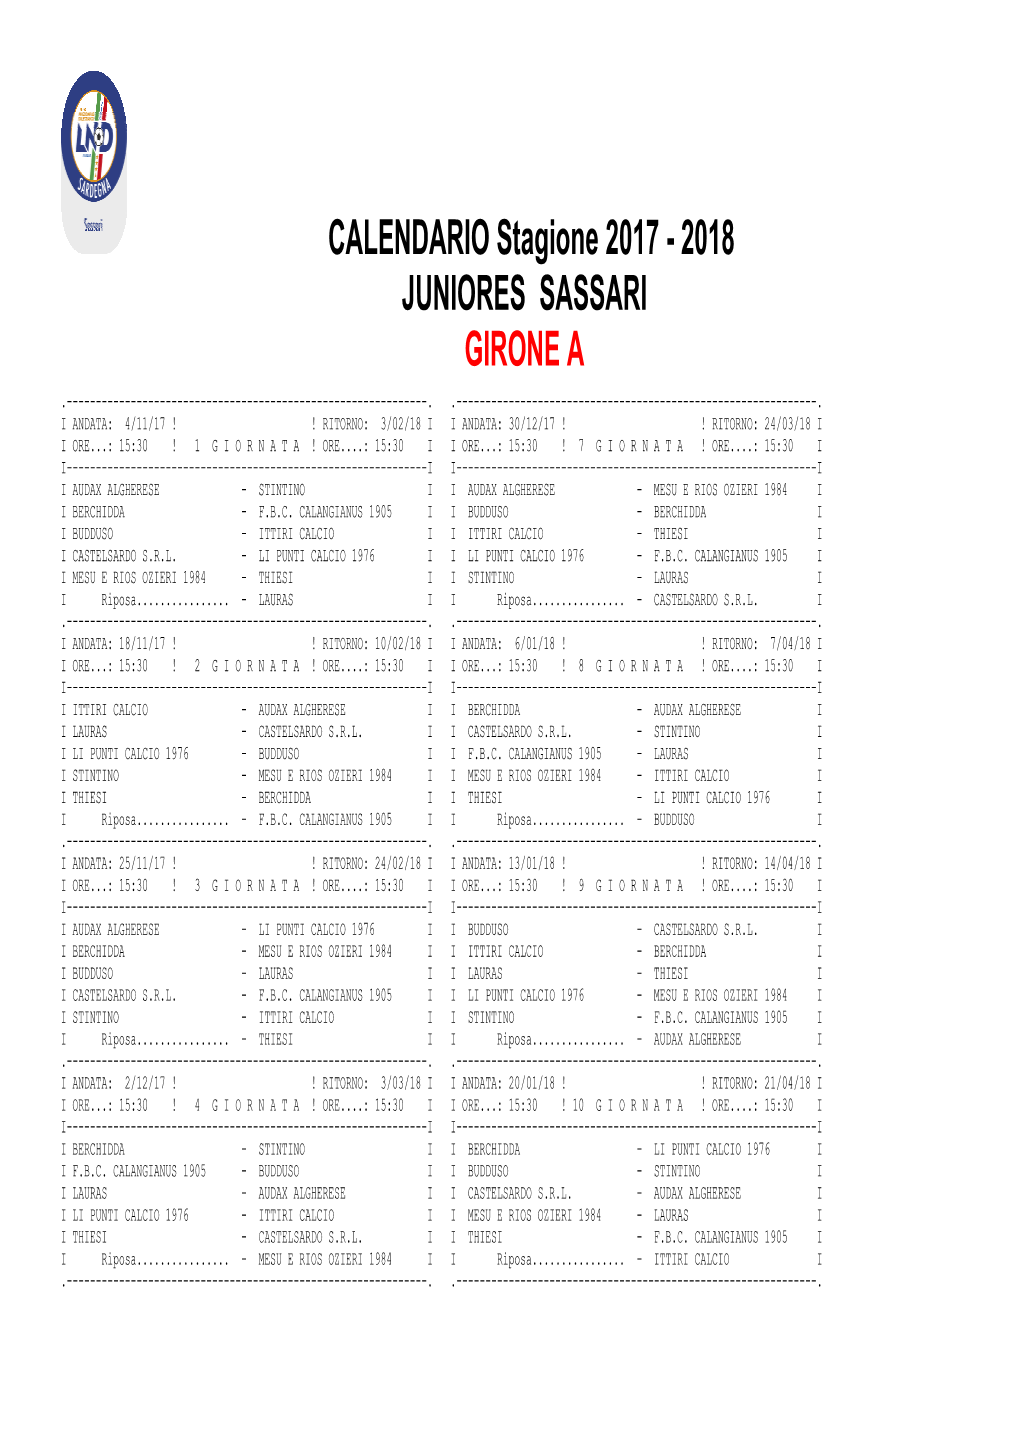 Calendario Juniores Nuovo Gir. A